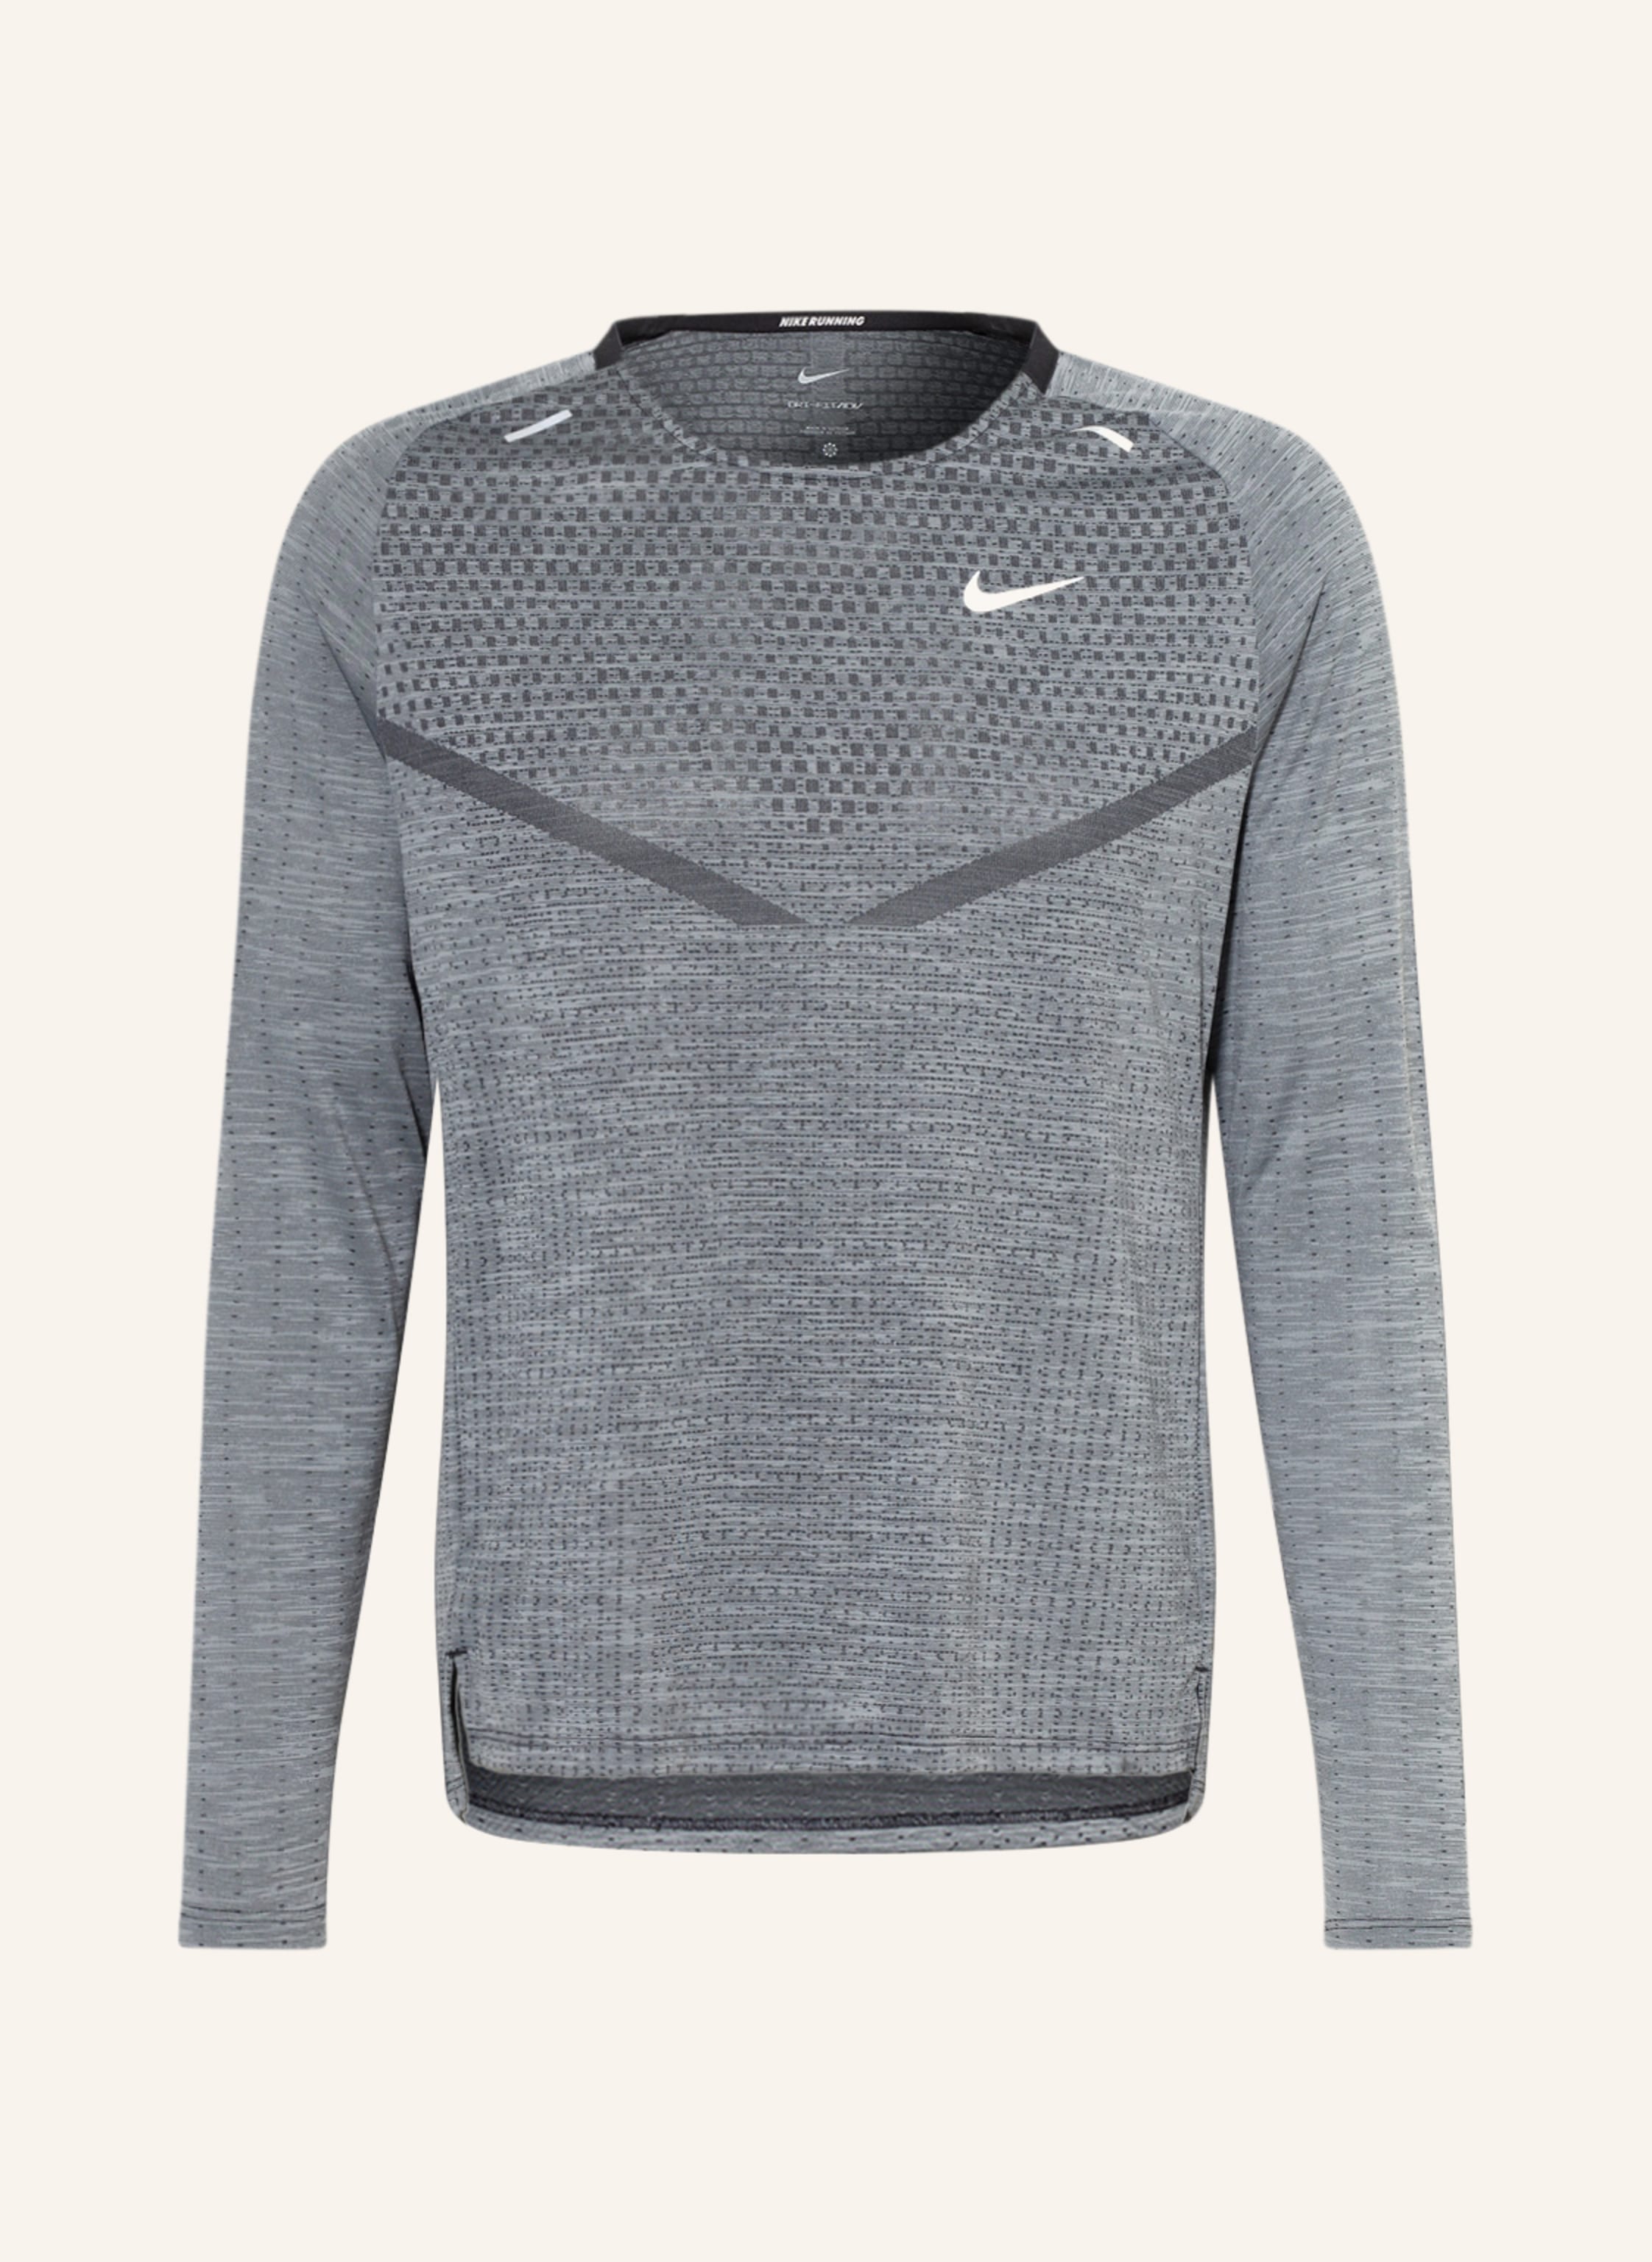 Nike Running shirt DRI-FIT ADV TECHKNIT ULTRA in gray/ black | Breuninger